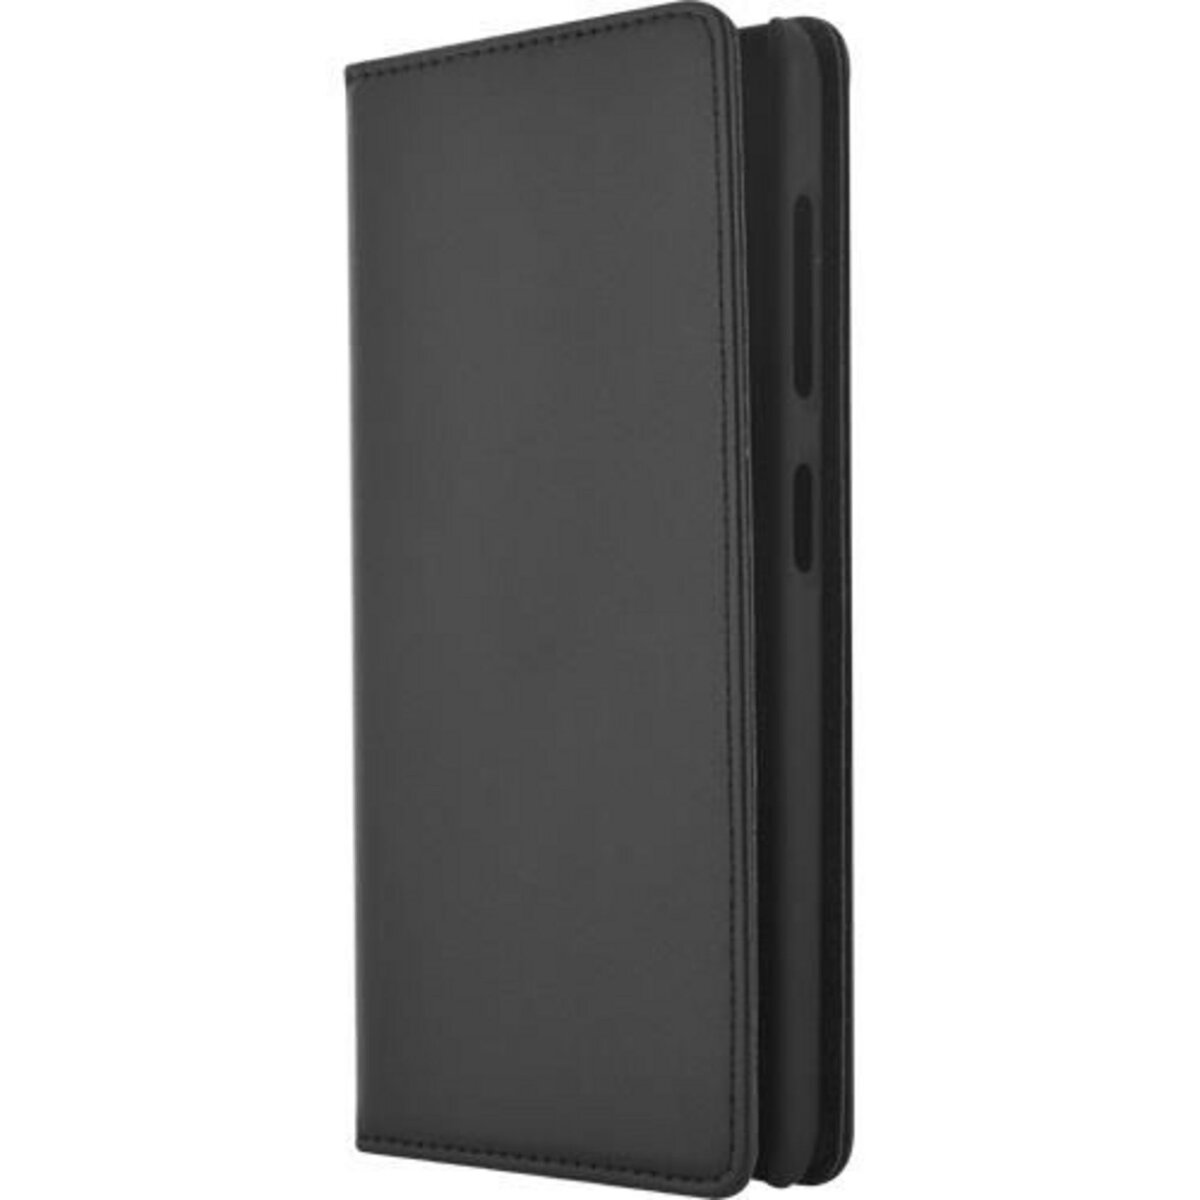 BIGBEN Etui Folio Nokia Lumia 535 Noir